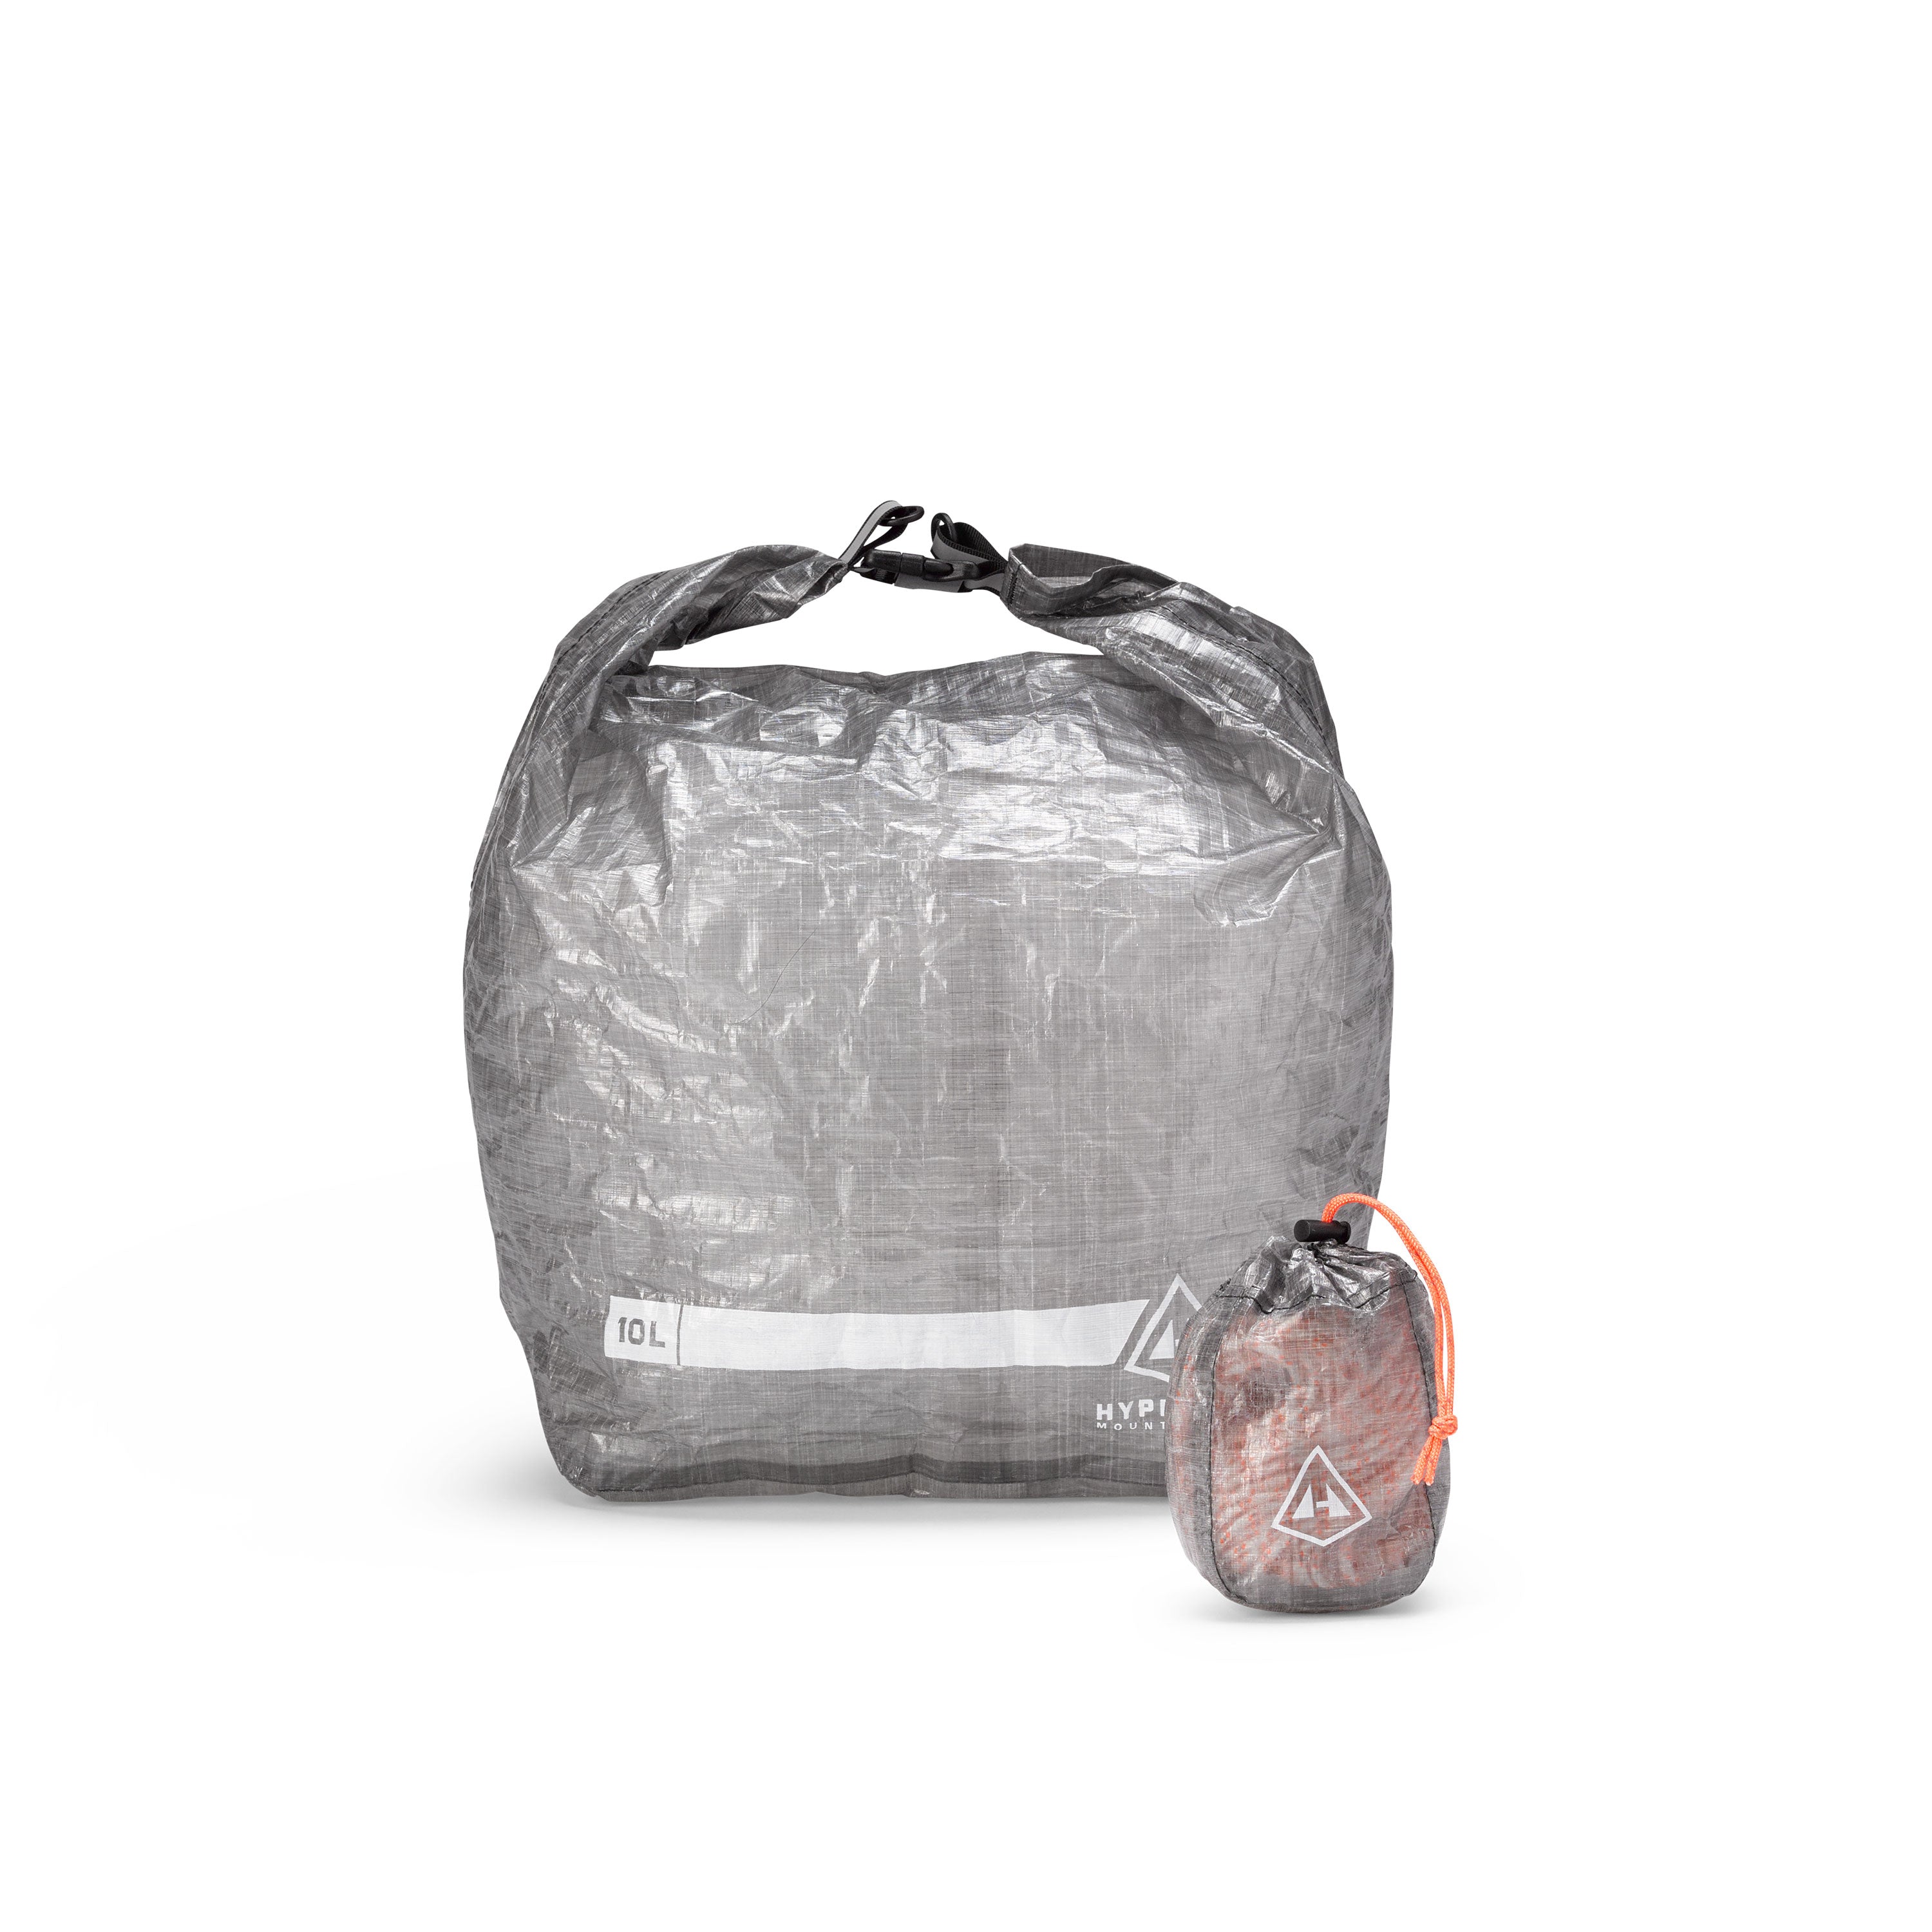 Hyperlite Mountain Gear 10L Roll-Top Food Bag Kit